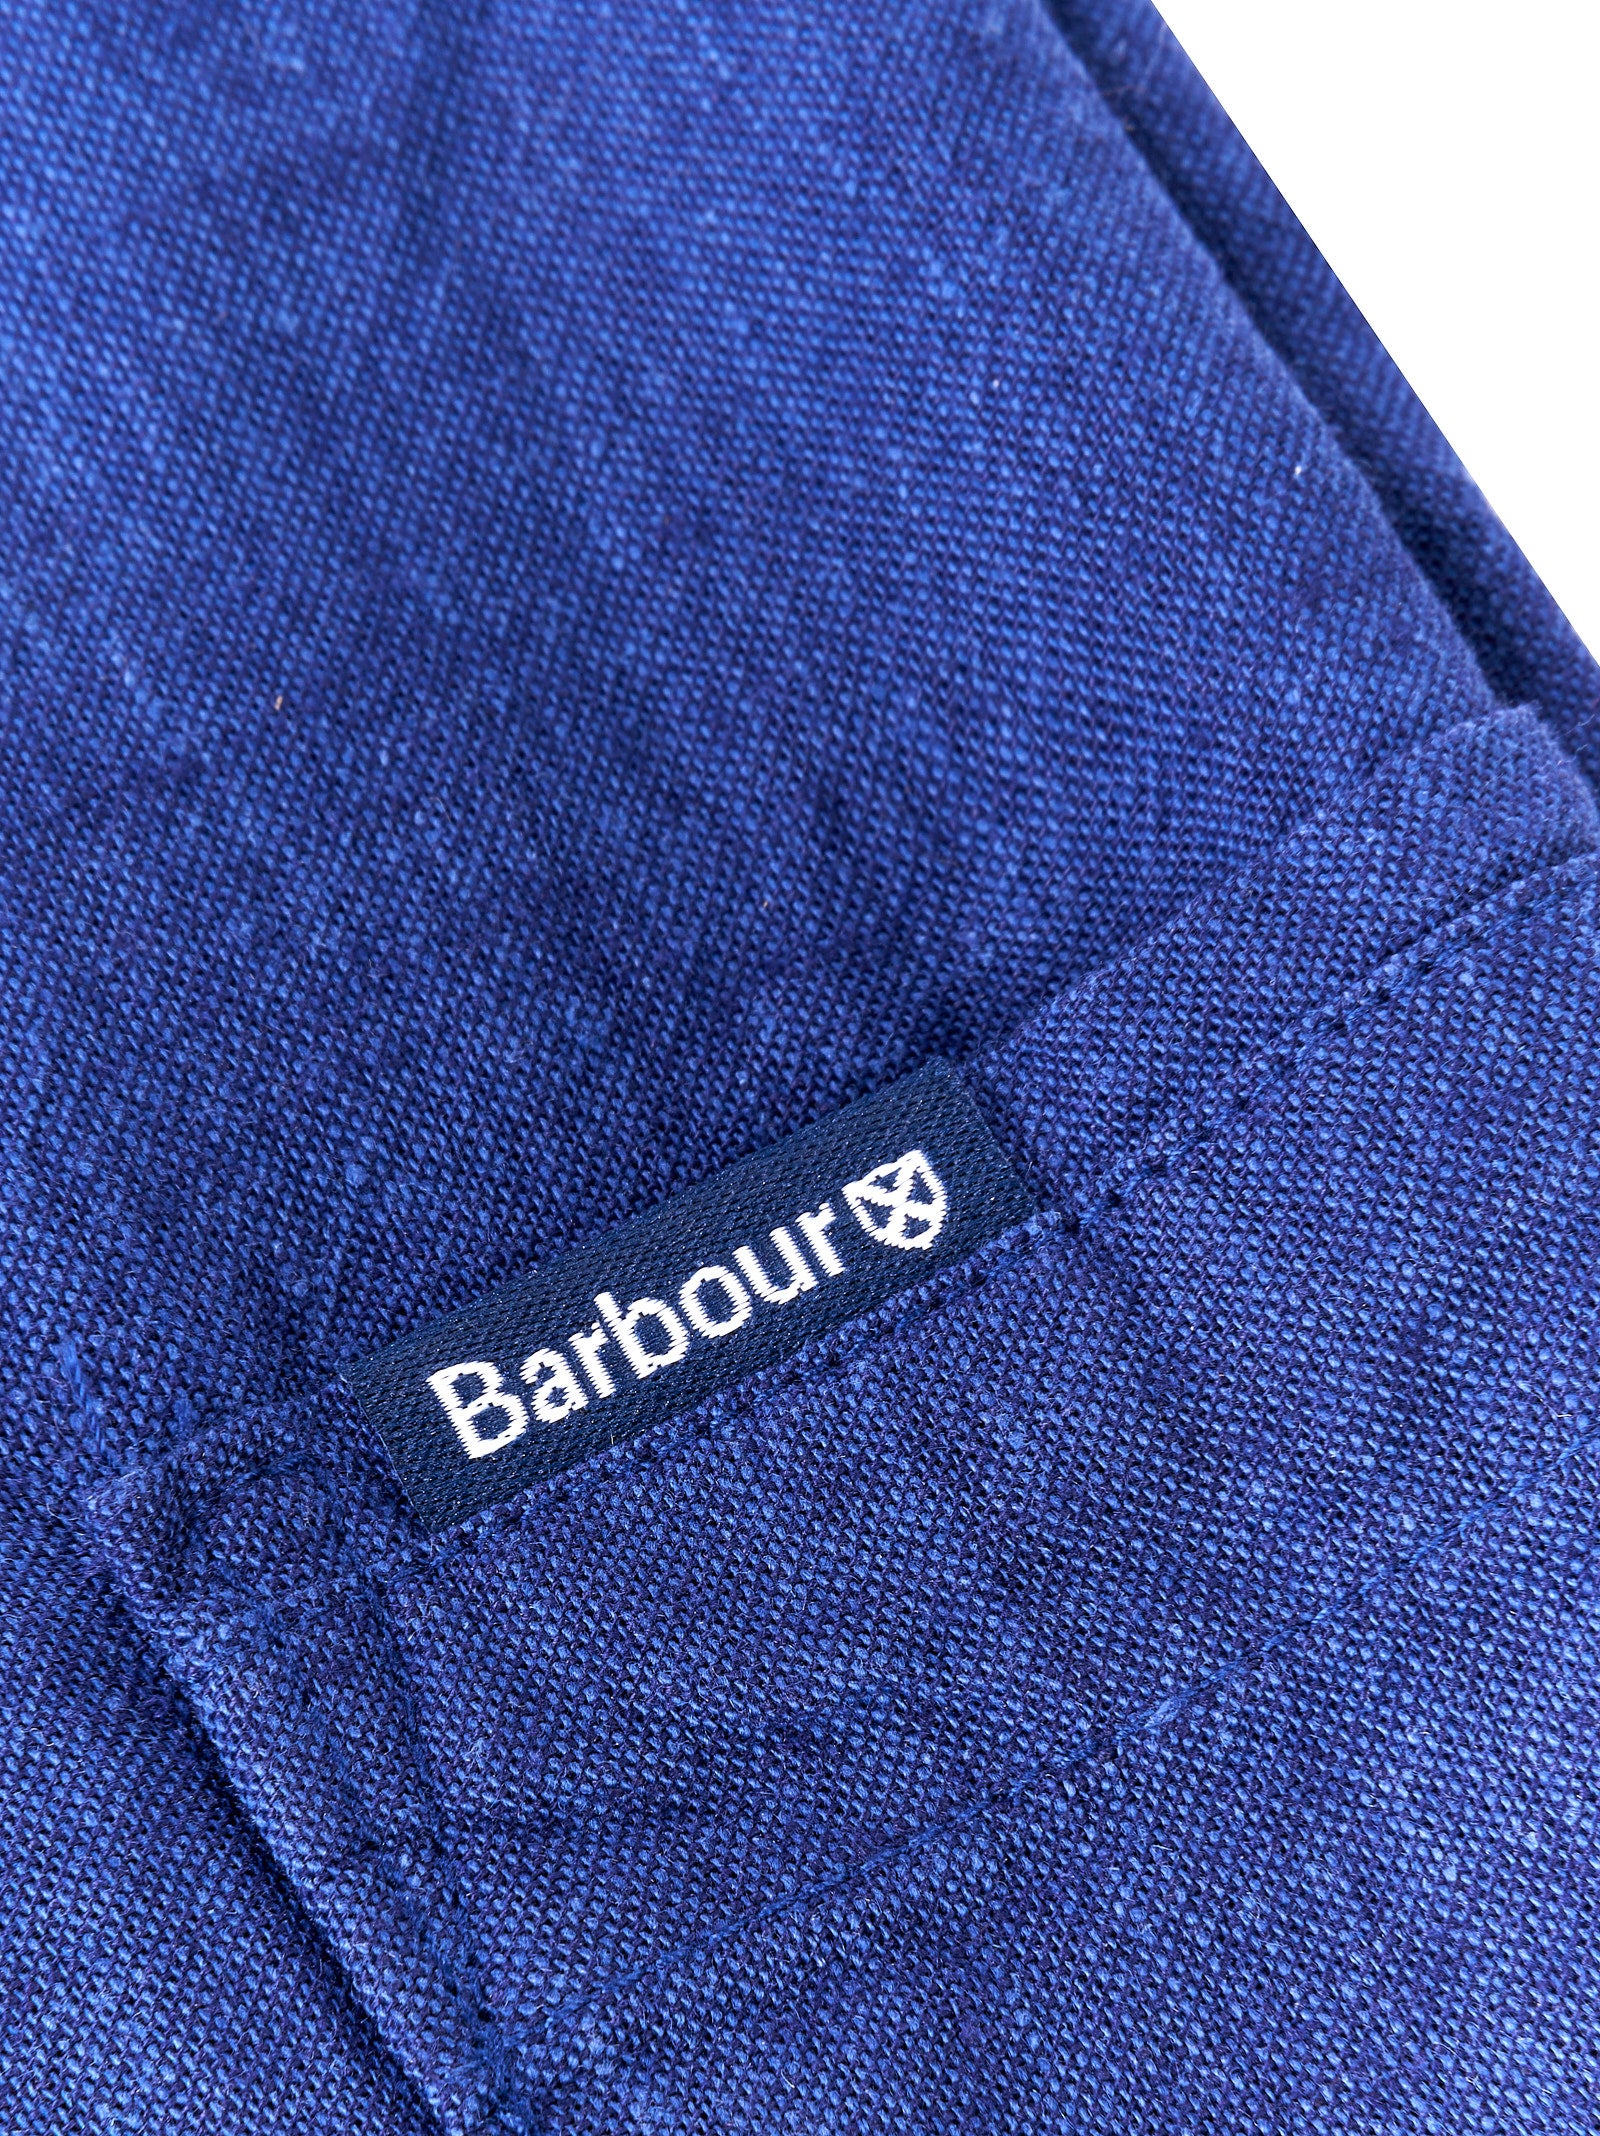 Camicia BARBOUR
Indigo